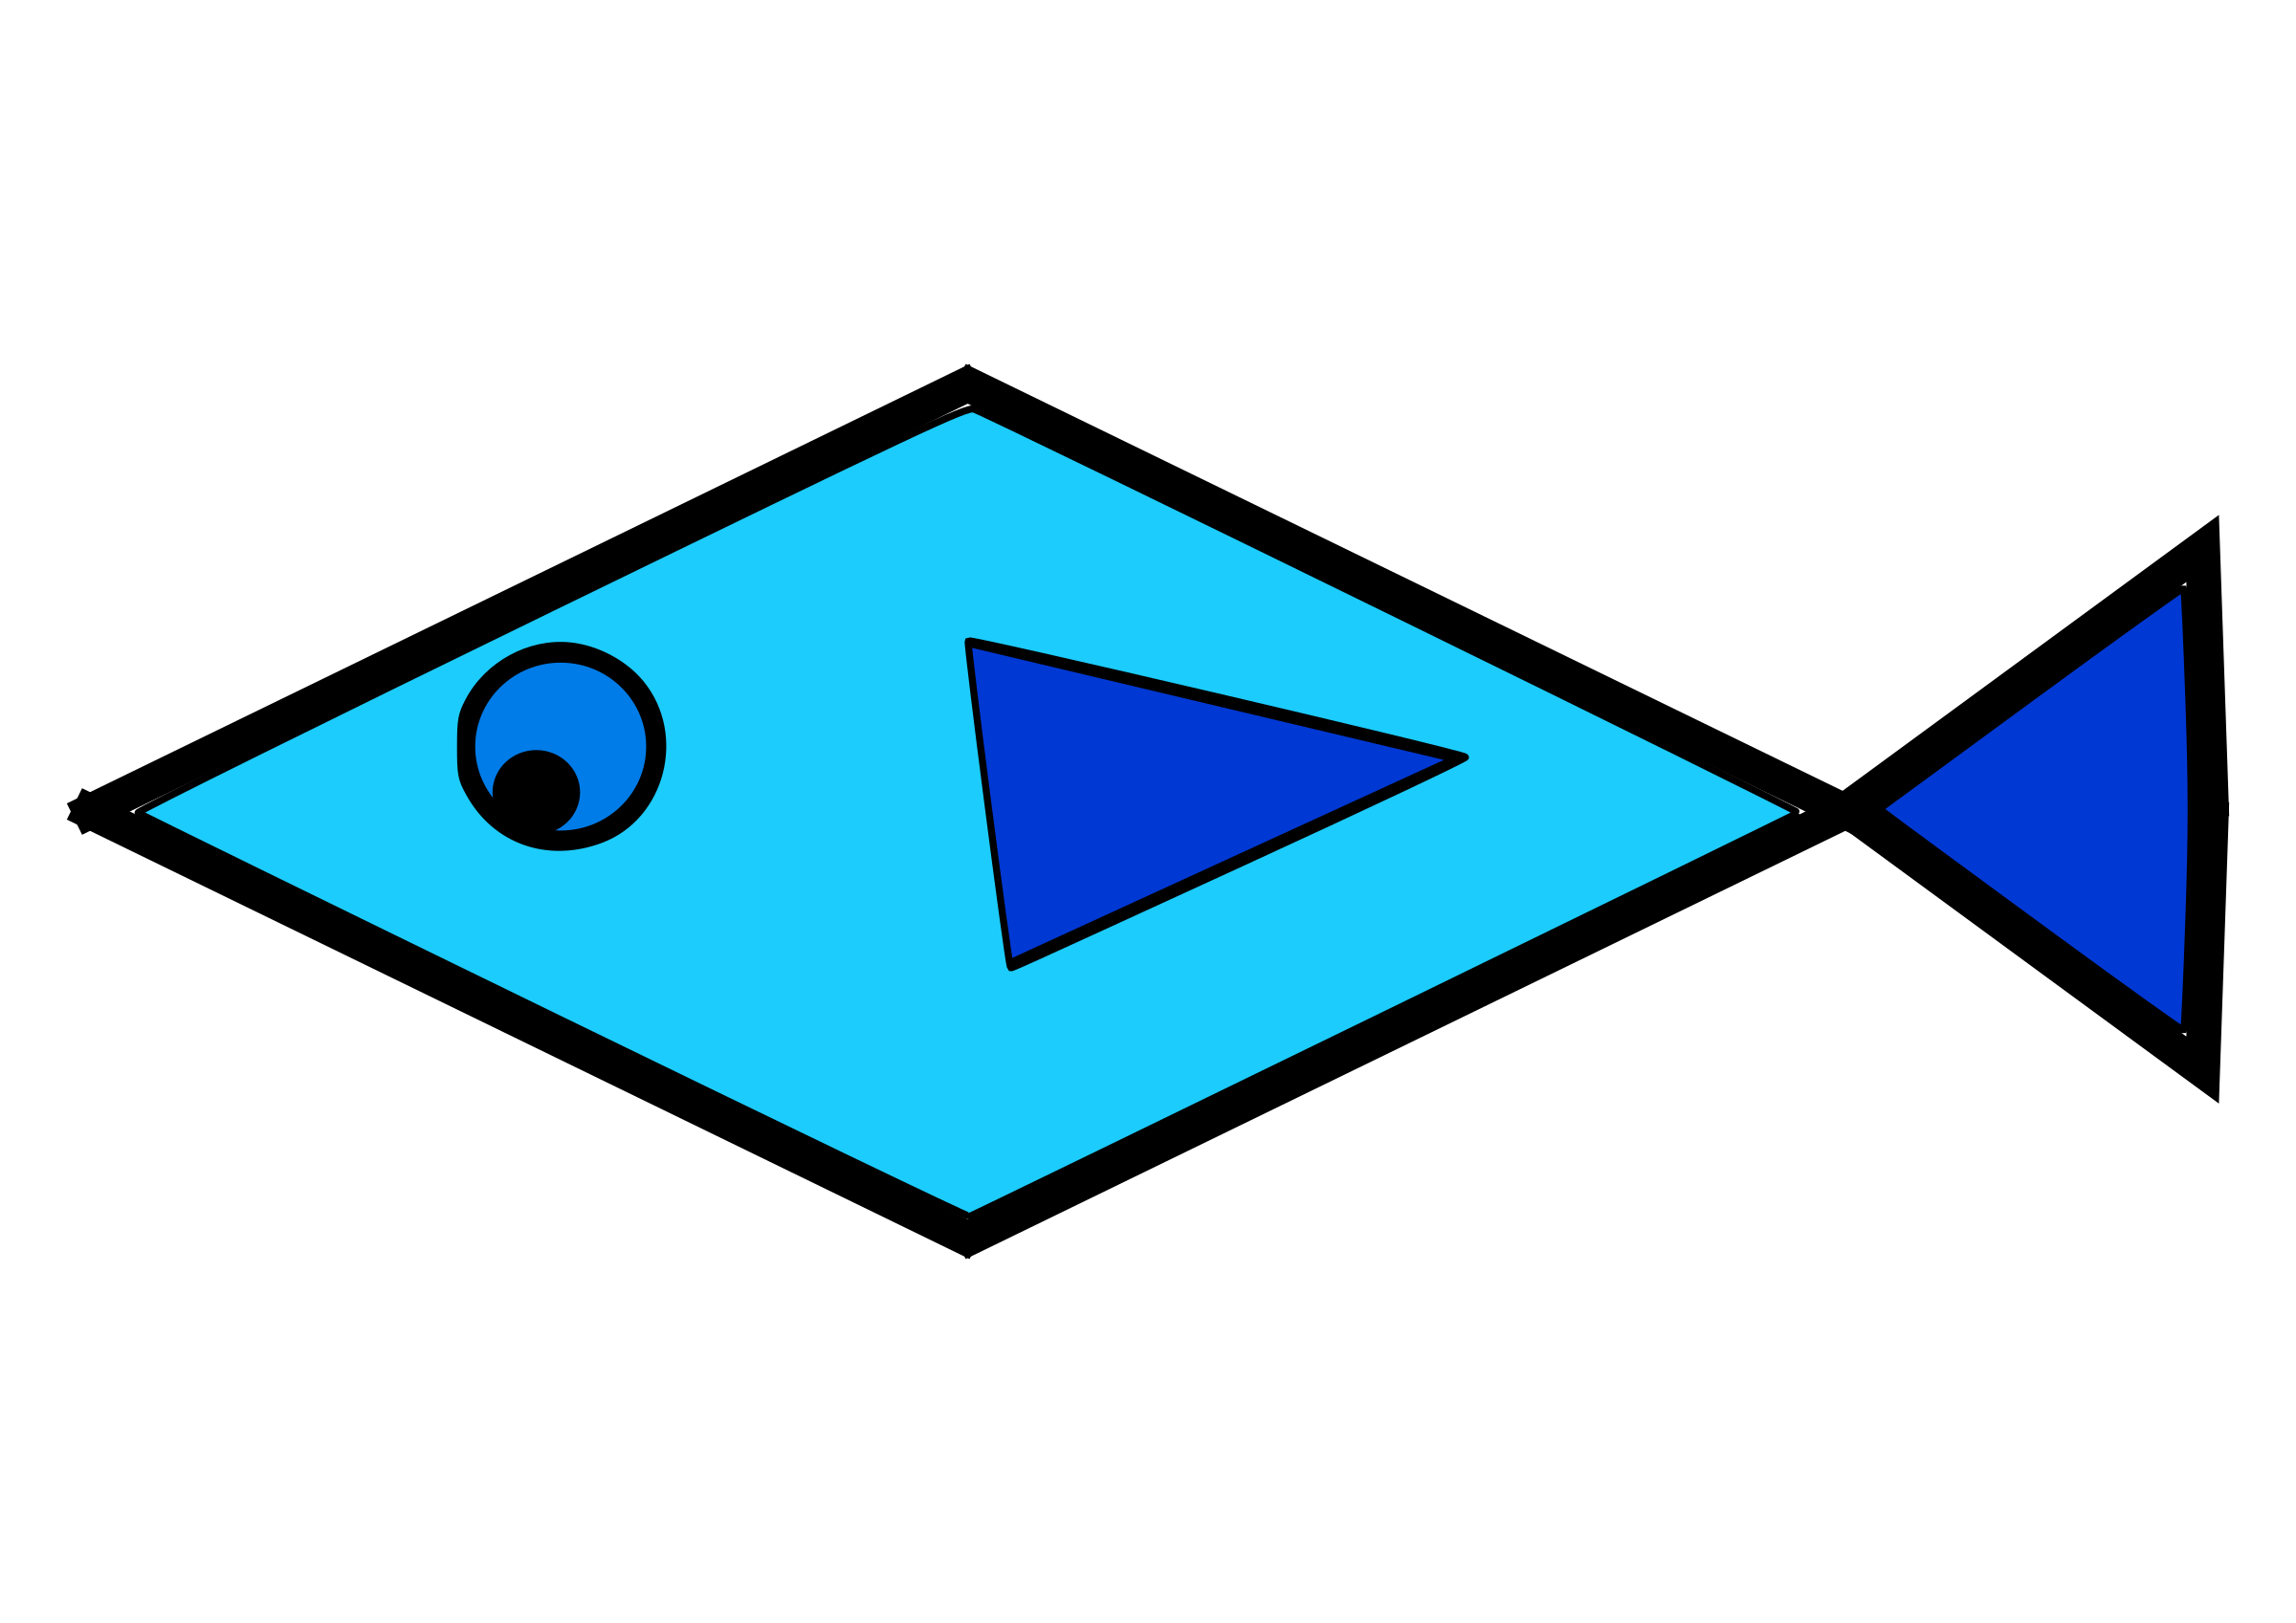 fish clipart triangle